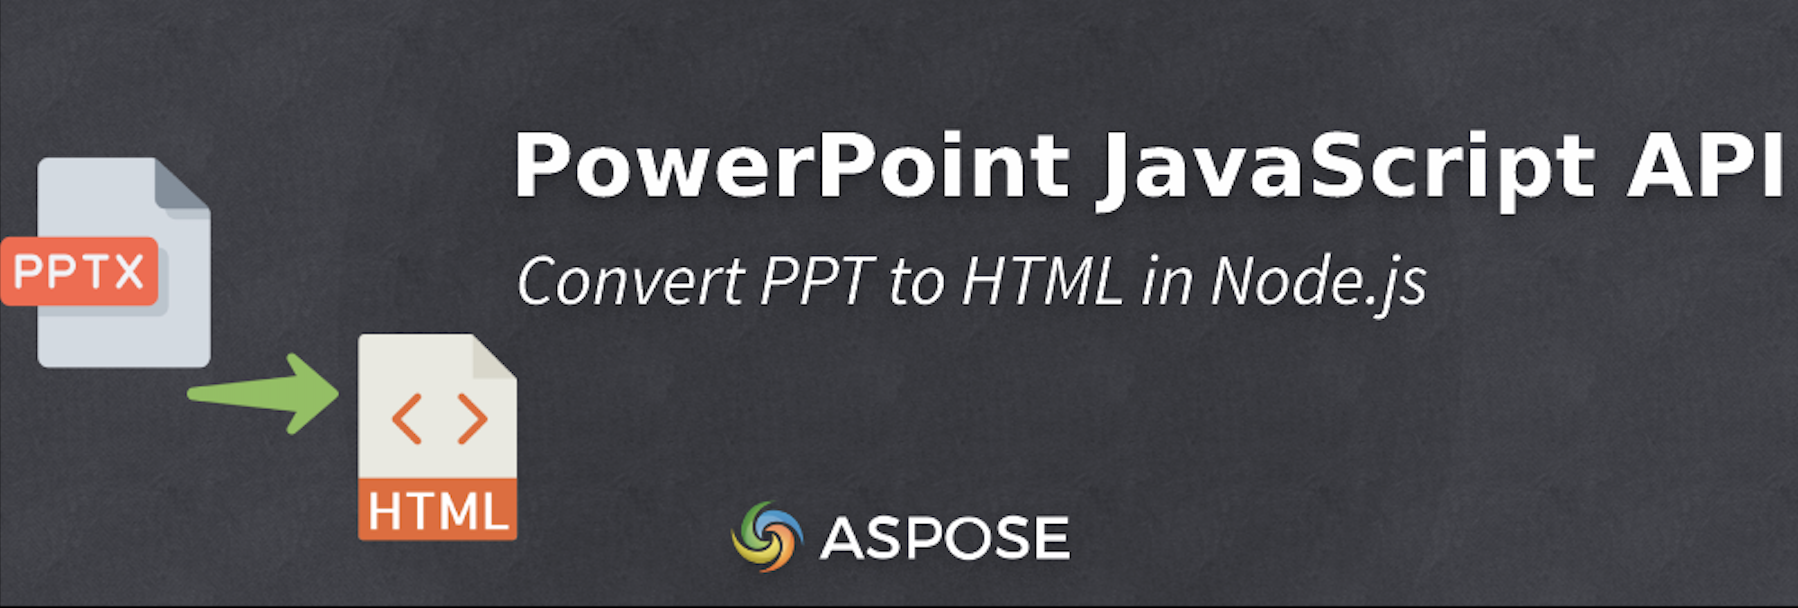 Převeďte PPT na HTML v Node.js - PowerPoint JavaScript API